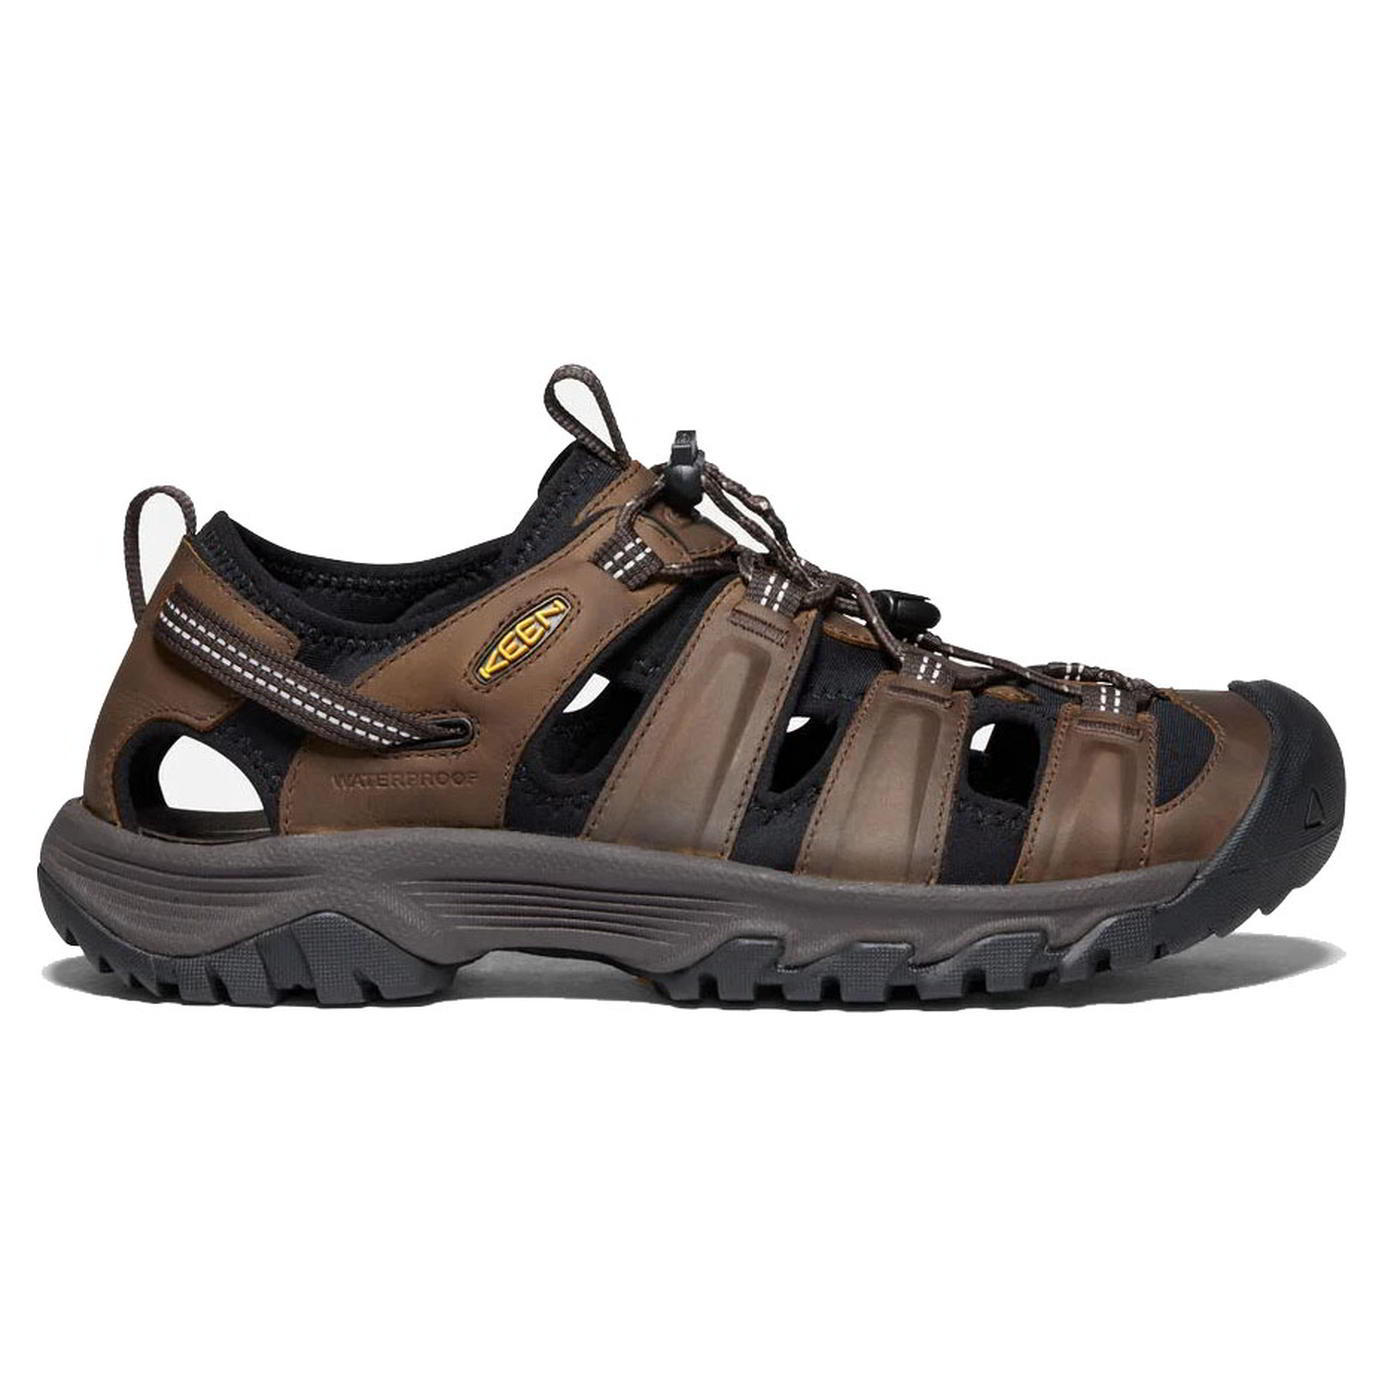 Keen Mens Targhee III Sandal Walking Hiking Shoes - UK 9.5 / US 10.5 Brown 2951